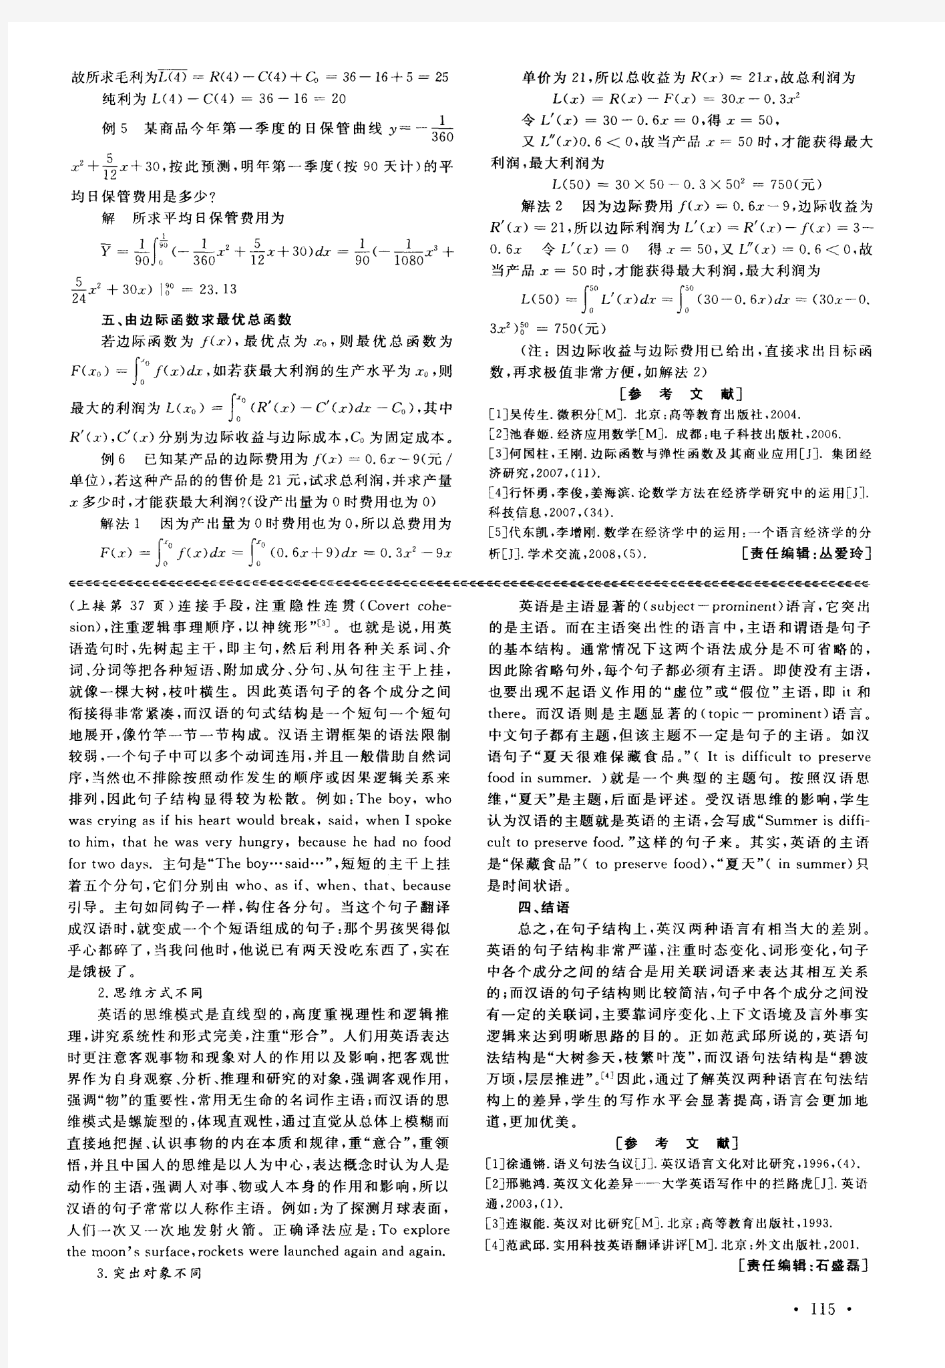 英汉语句法结构差异比较